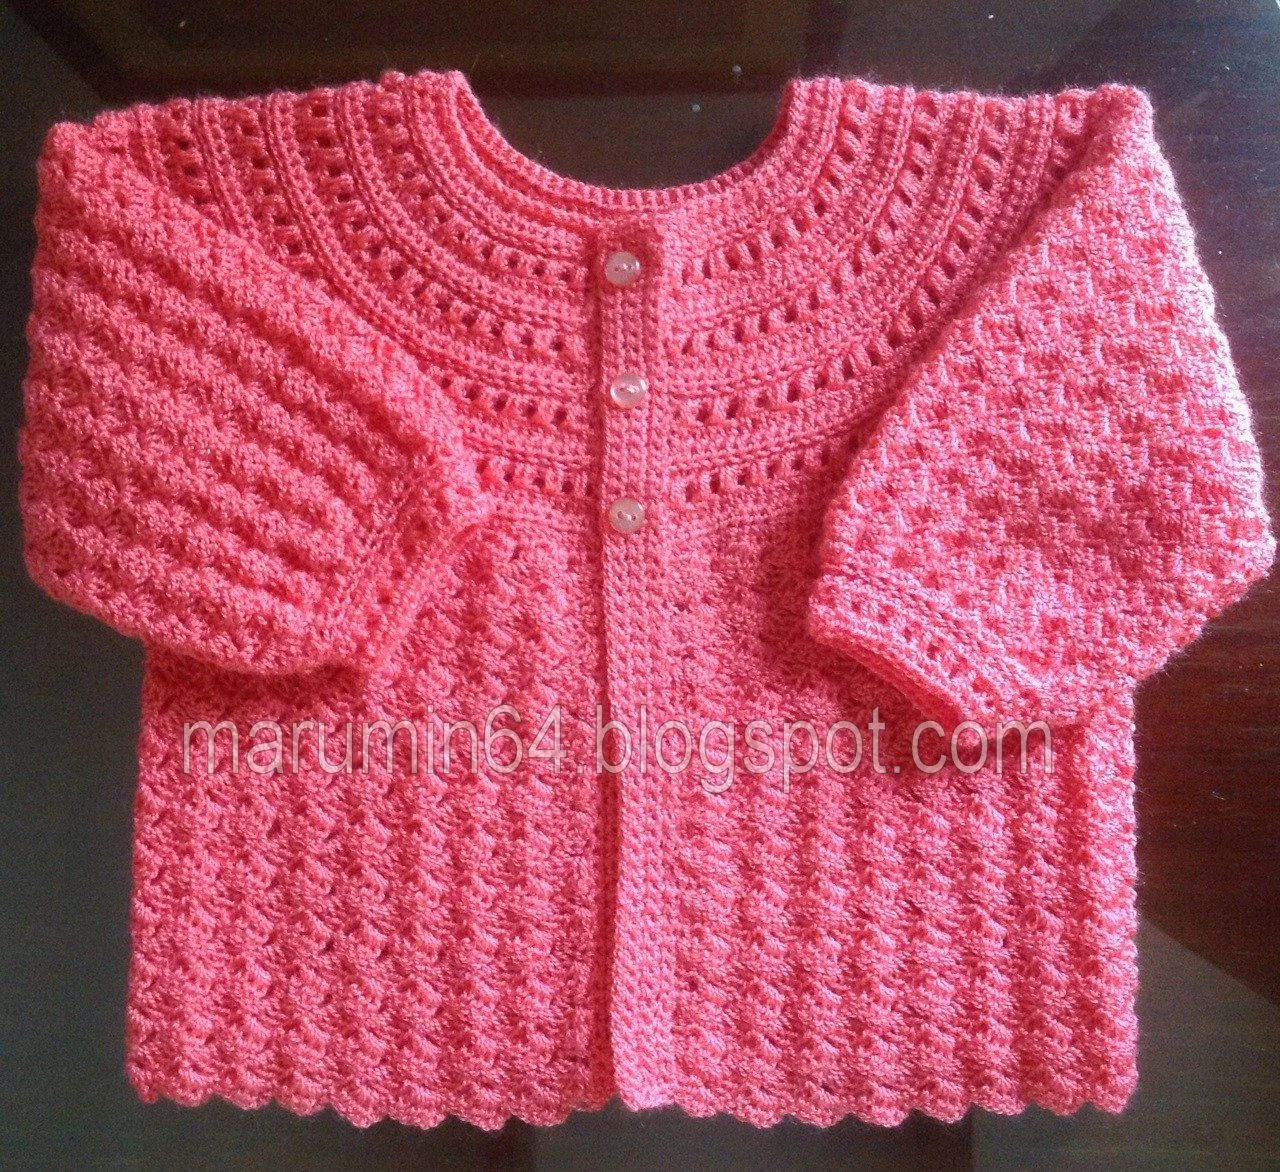 Marumin Crochet: CR 018 - Coral Canesú Redondo Calado / Coral ...